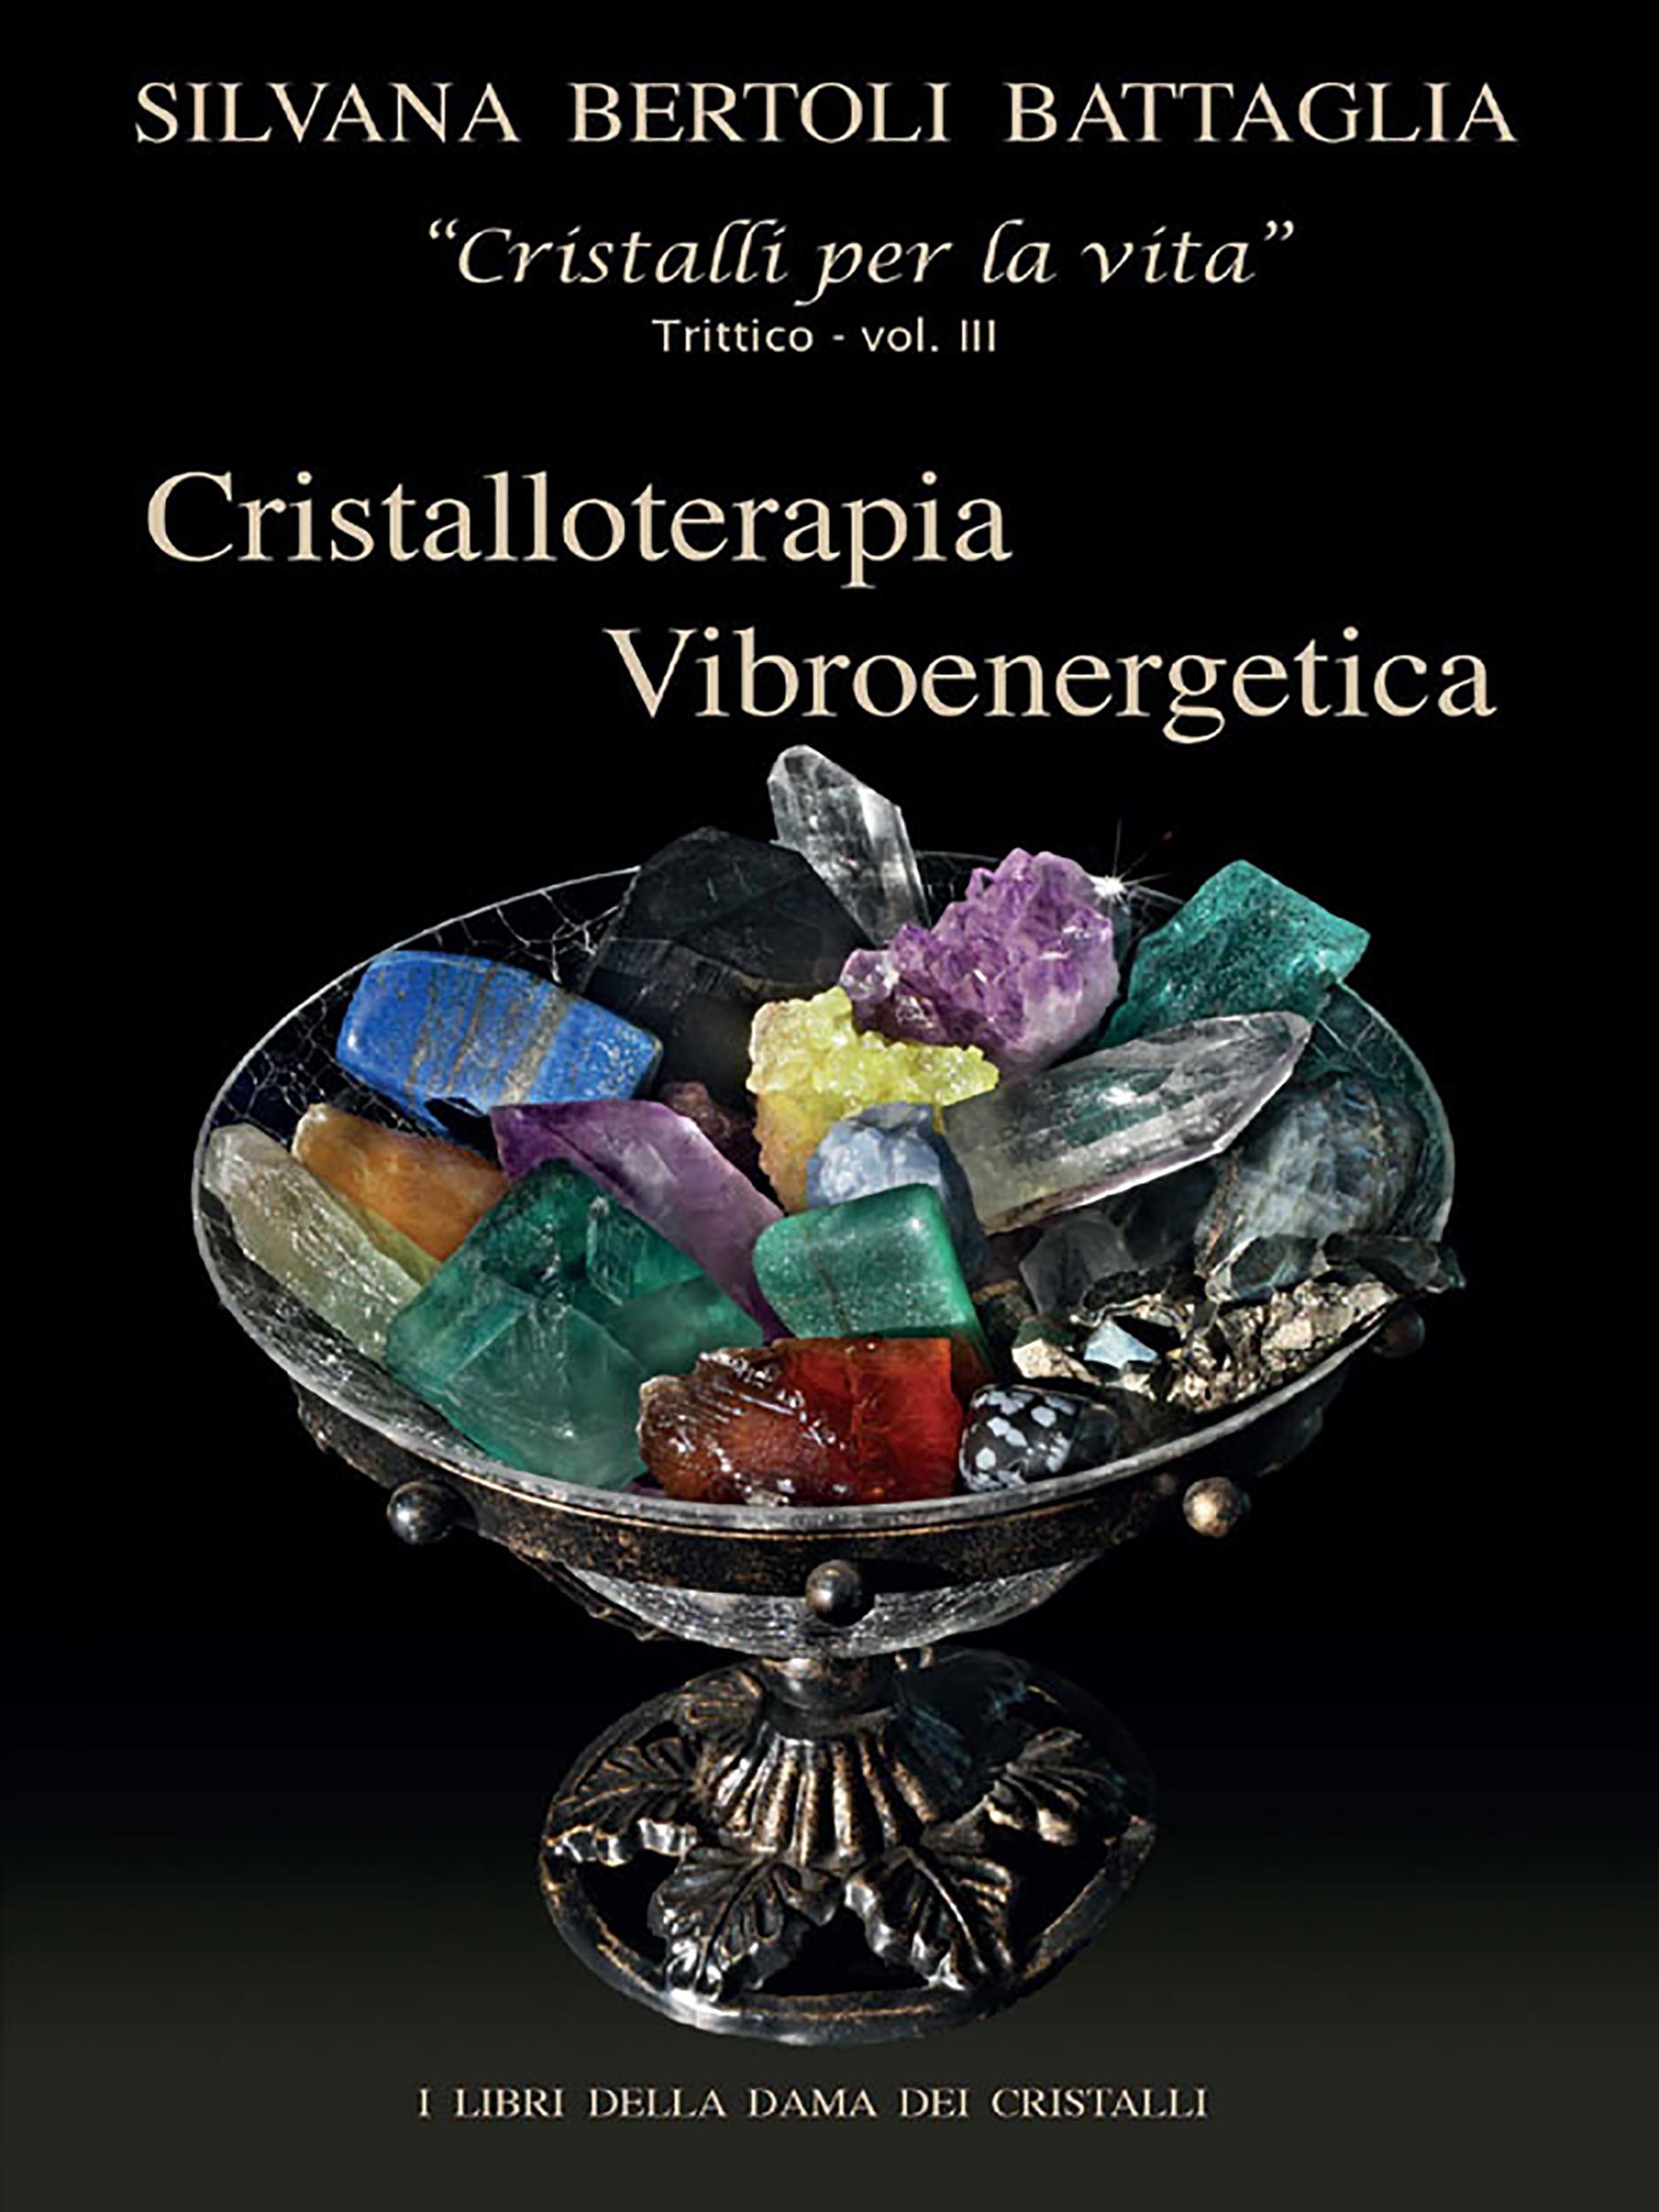 “Cristalloterapia Vibroenergetica” con Schede Cristalli Terapeutici e Indici Analitici vol. 3